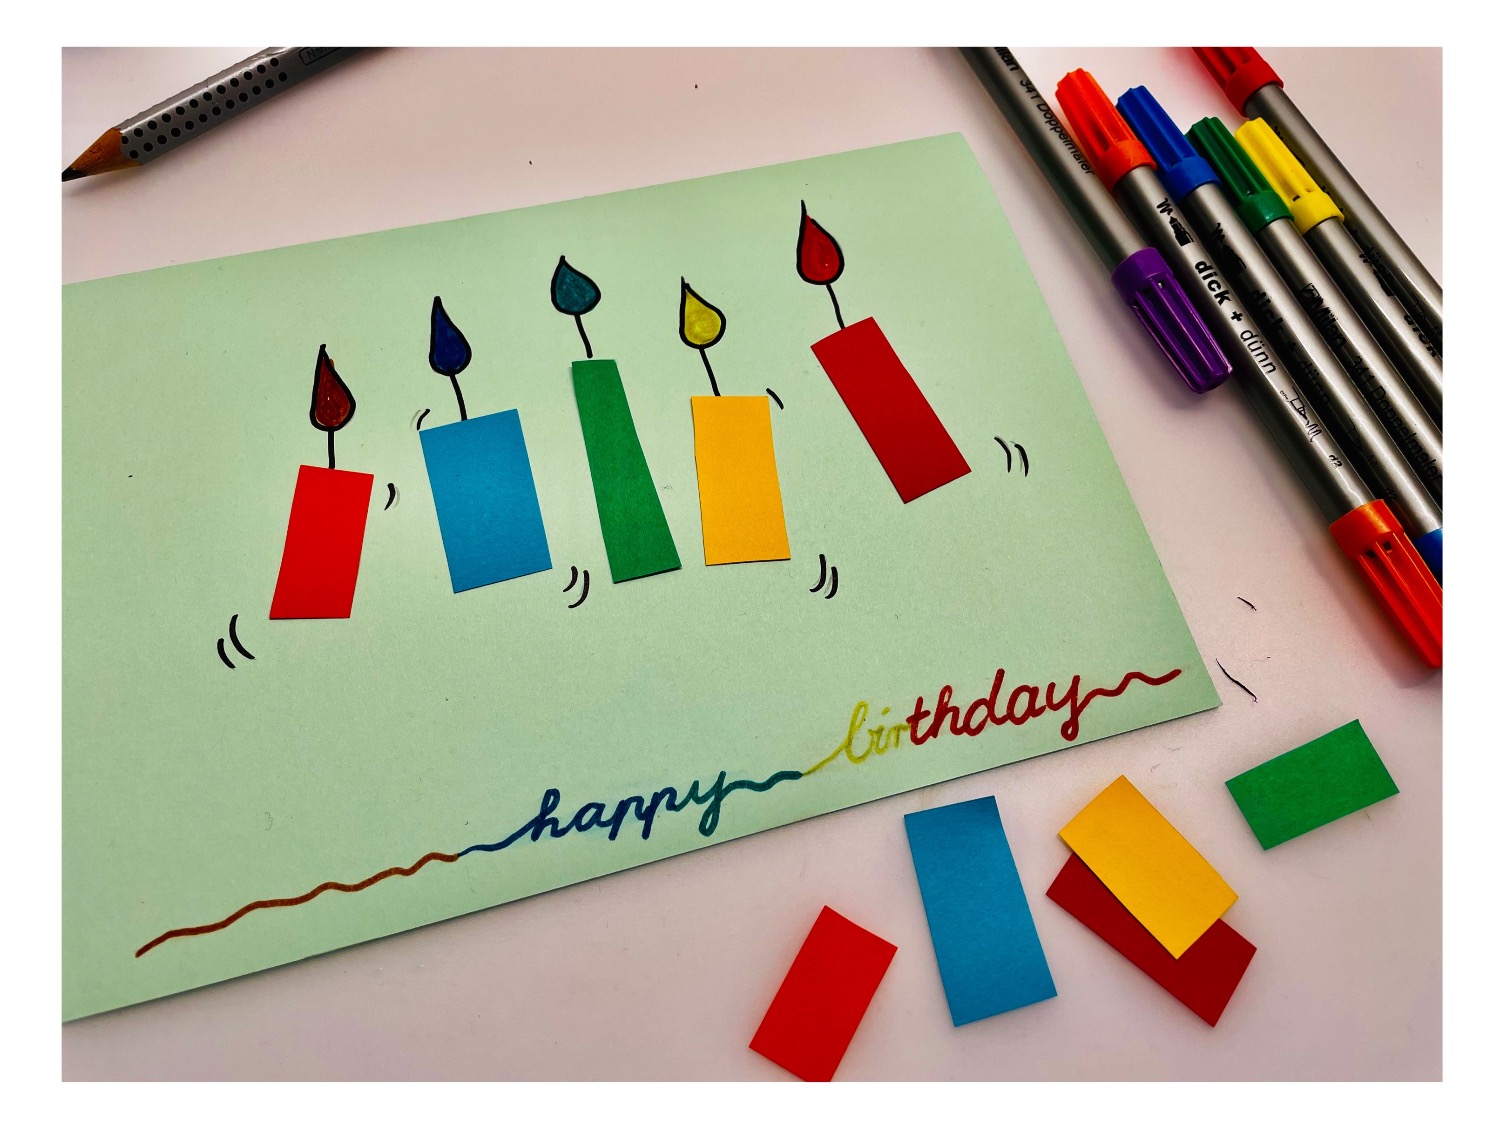 Titelbild zur Idee für die Beschäftigung mit Kindern '(606) Geburtstagskarte basteln'